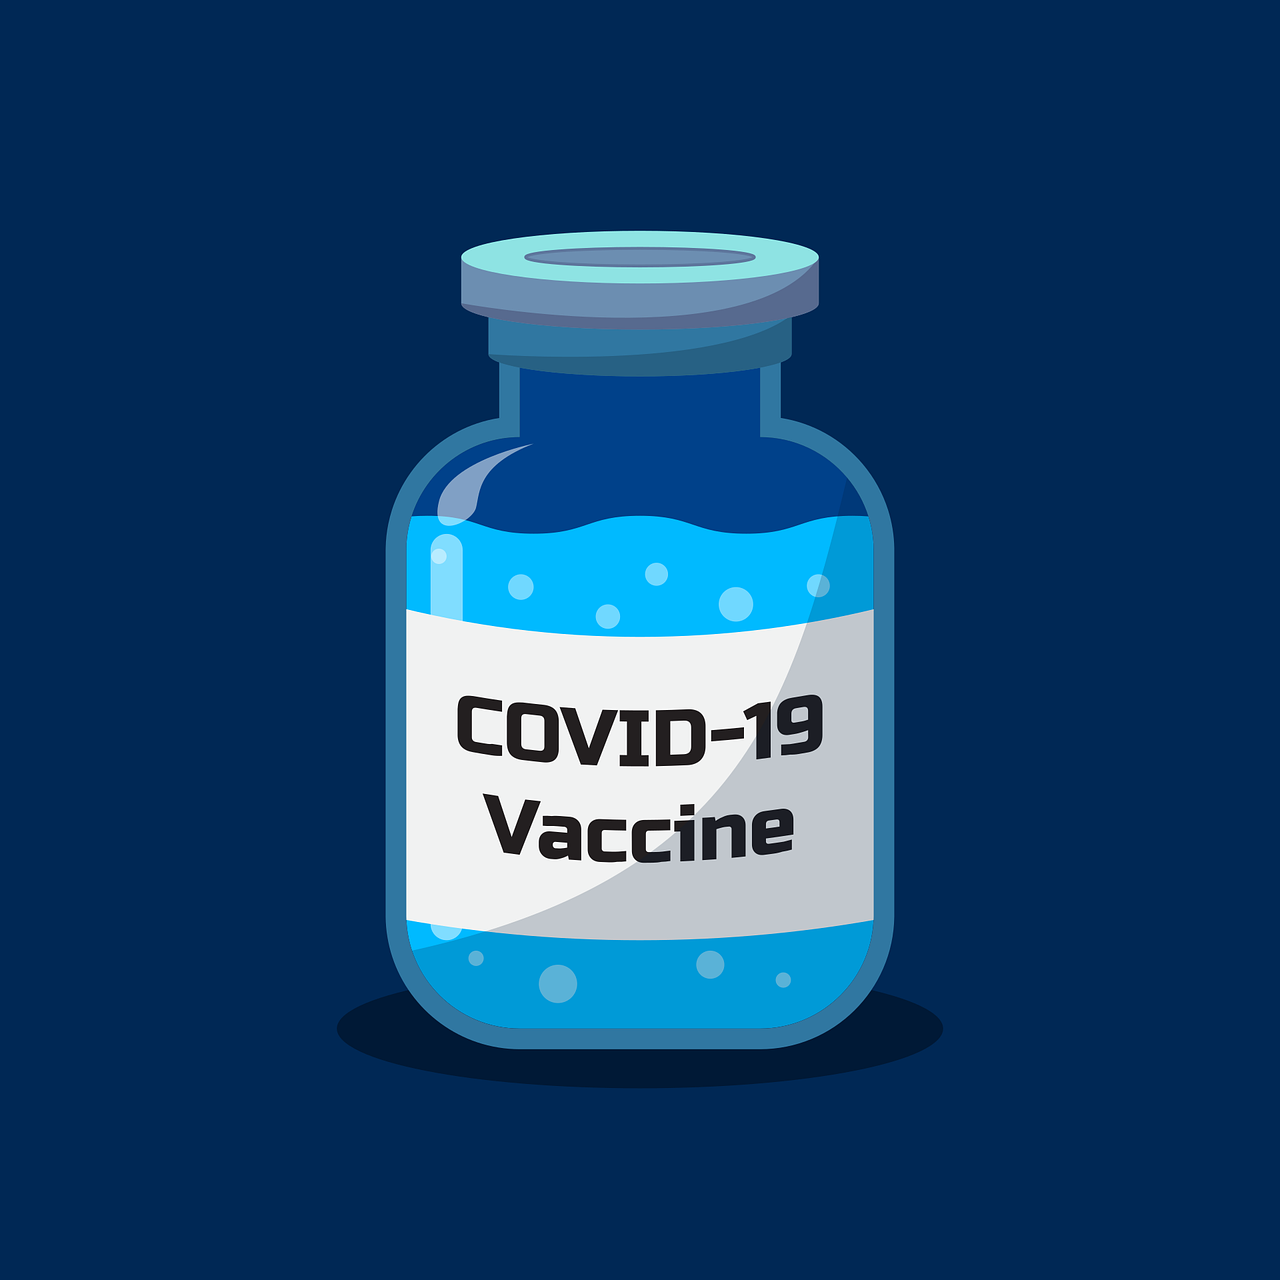 COVID19 vaccine image